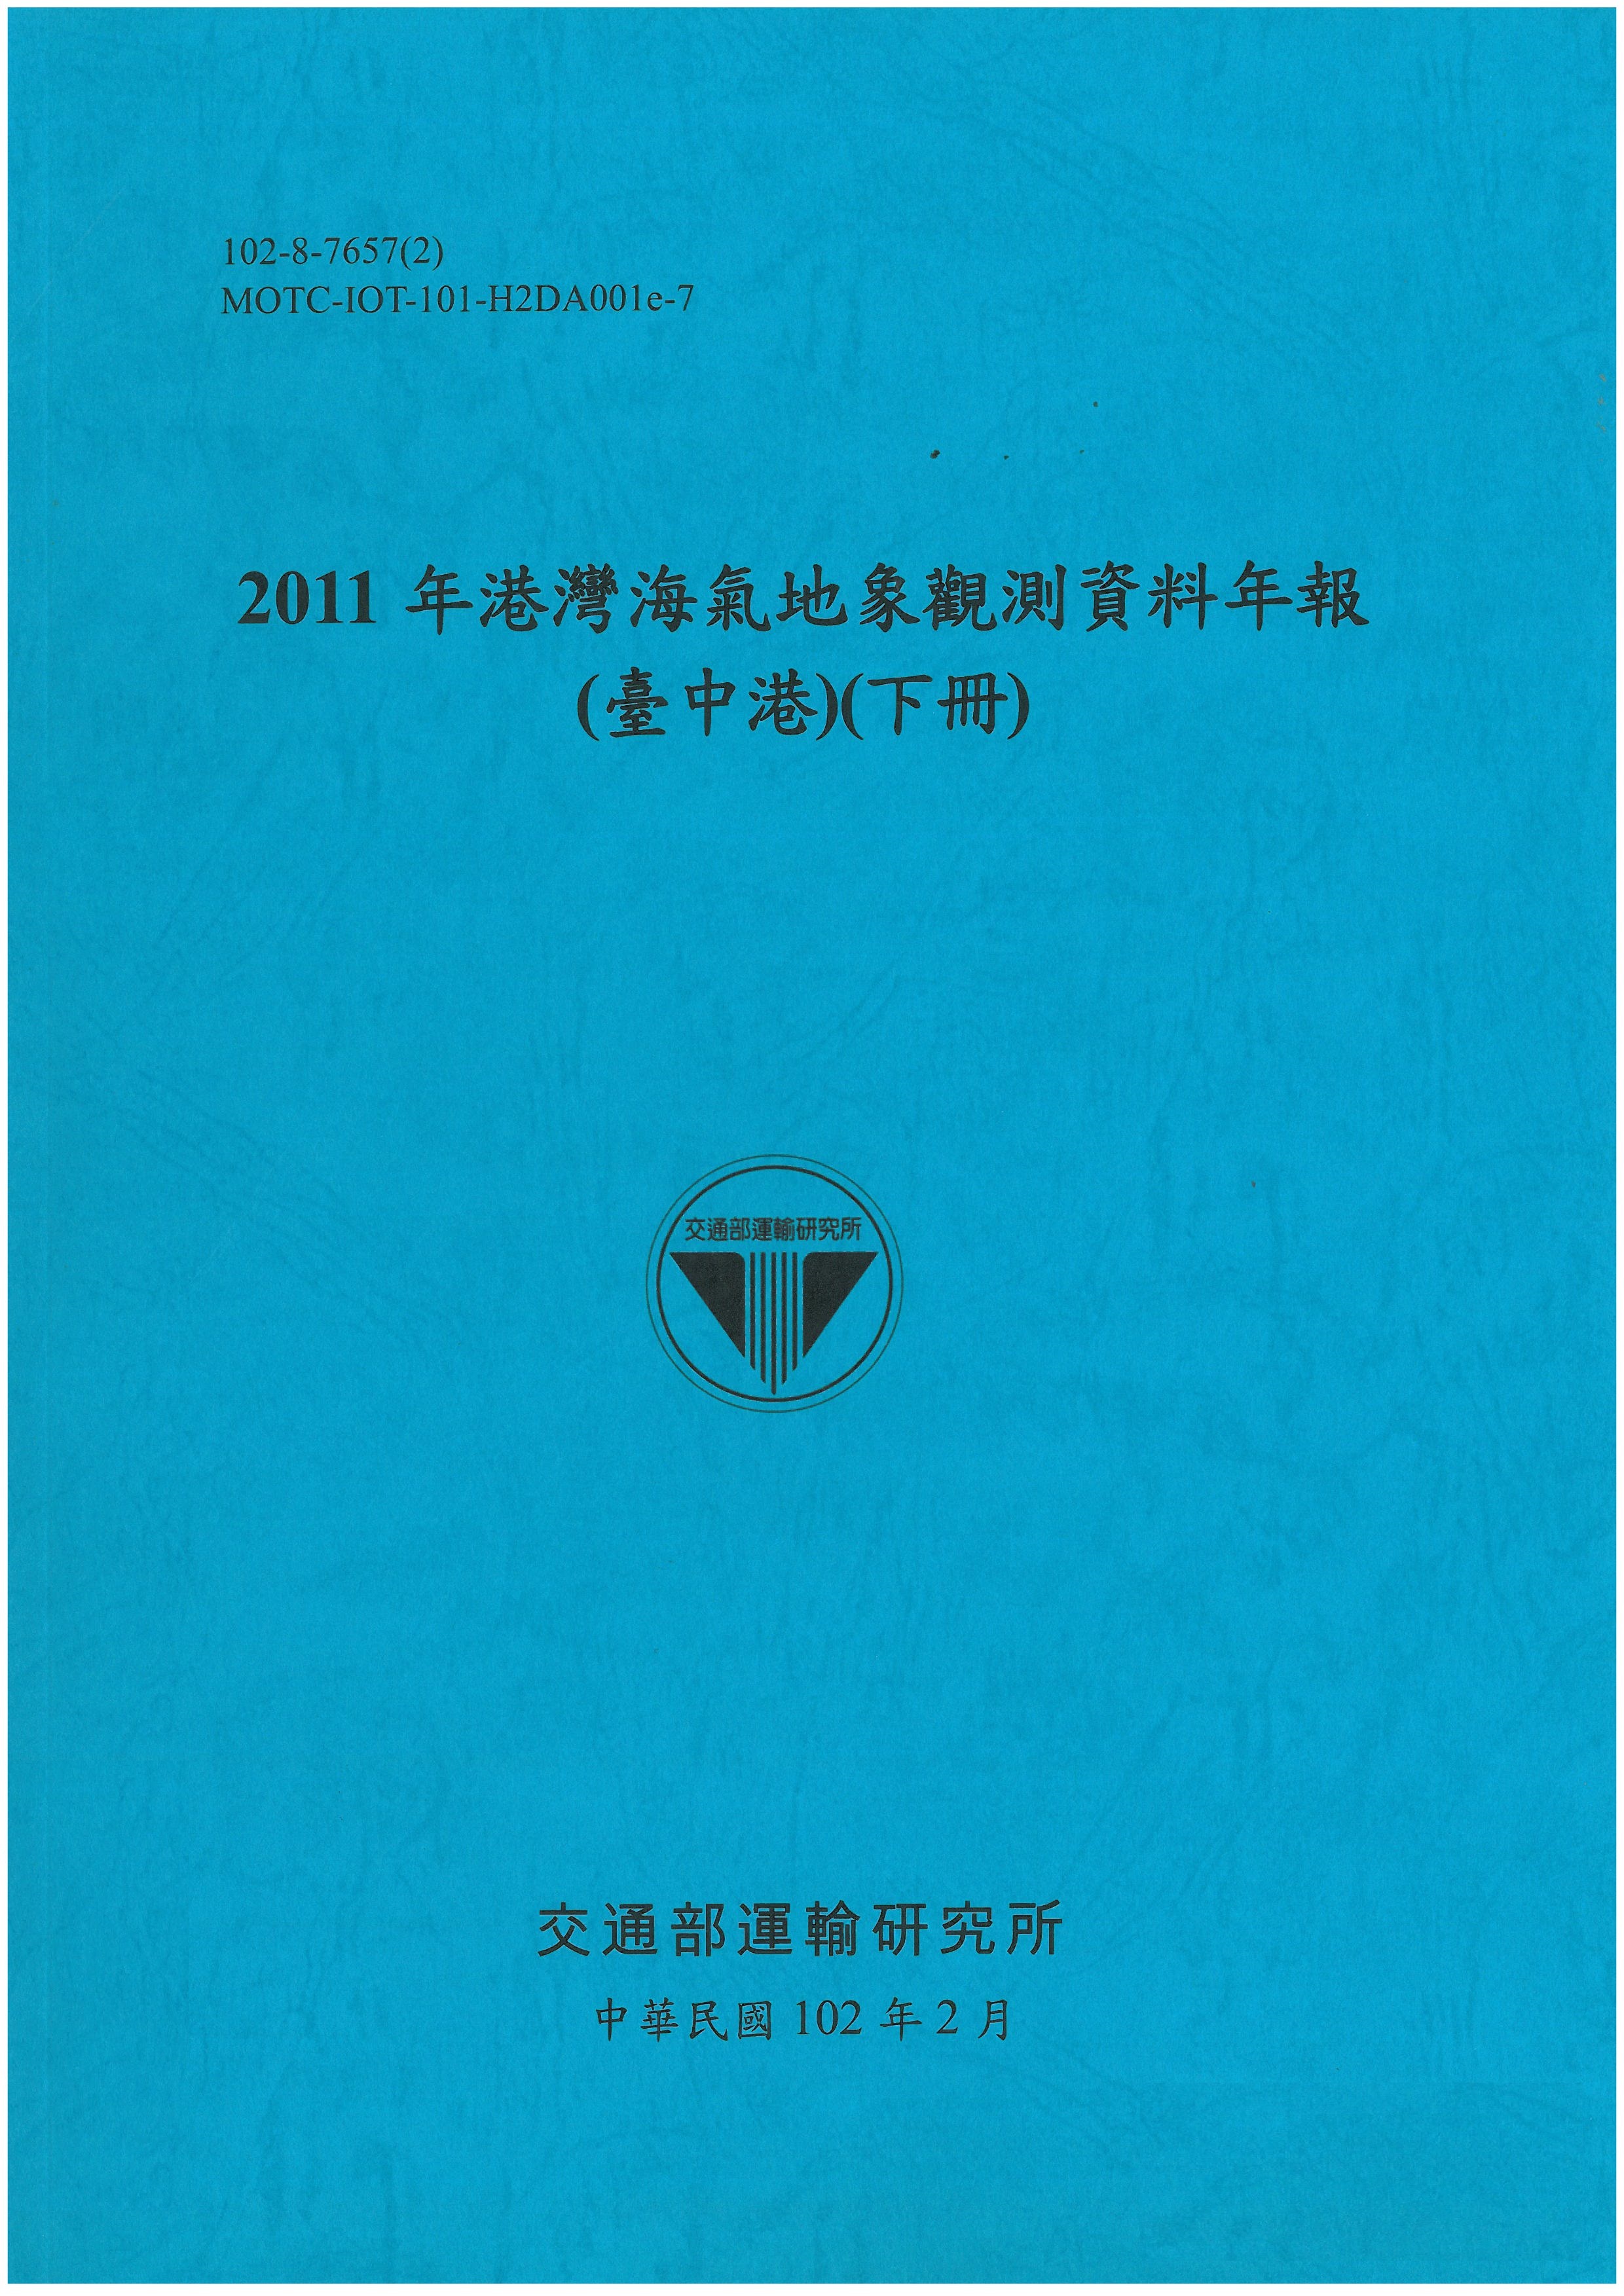 2011年港灣海氣地象觀測資料年報(臺中港)(下冊)